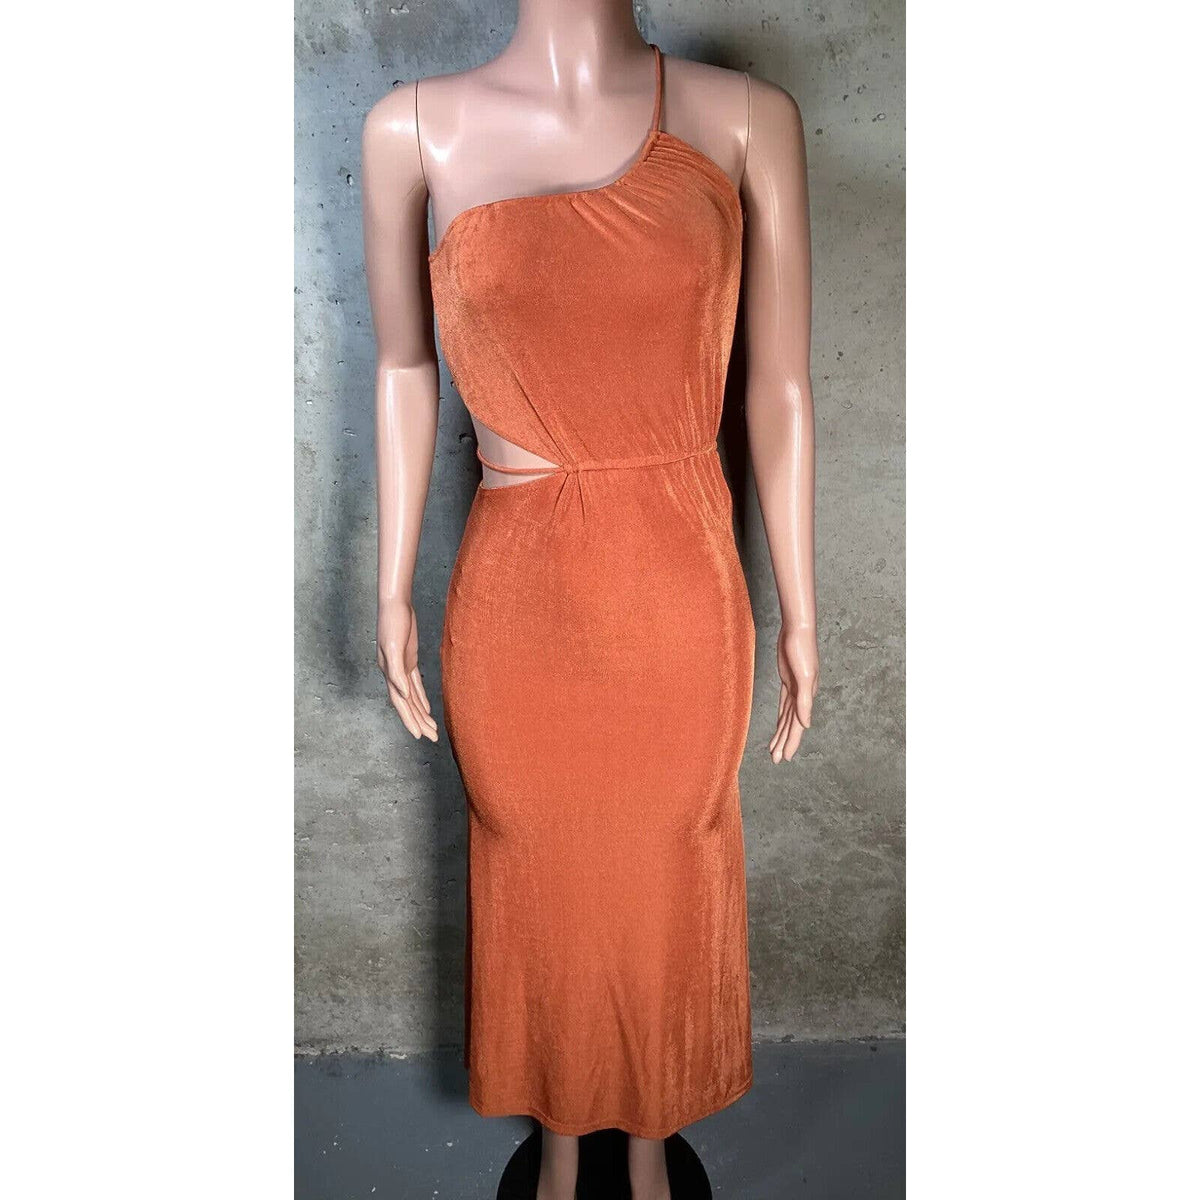 Misha Orange Stretch Dress Sz. 0